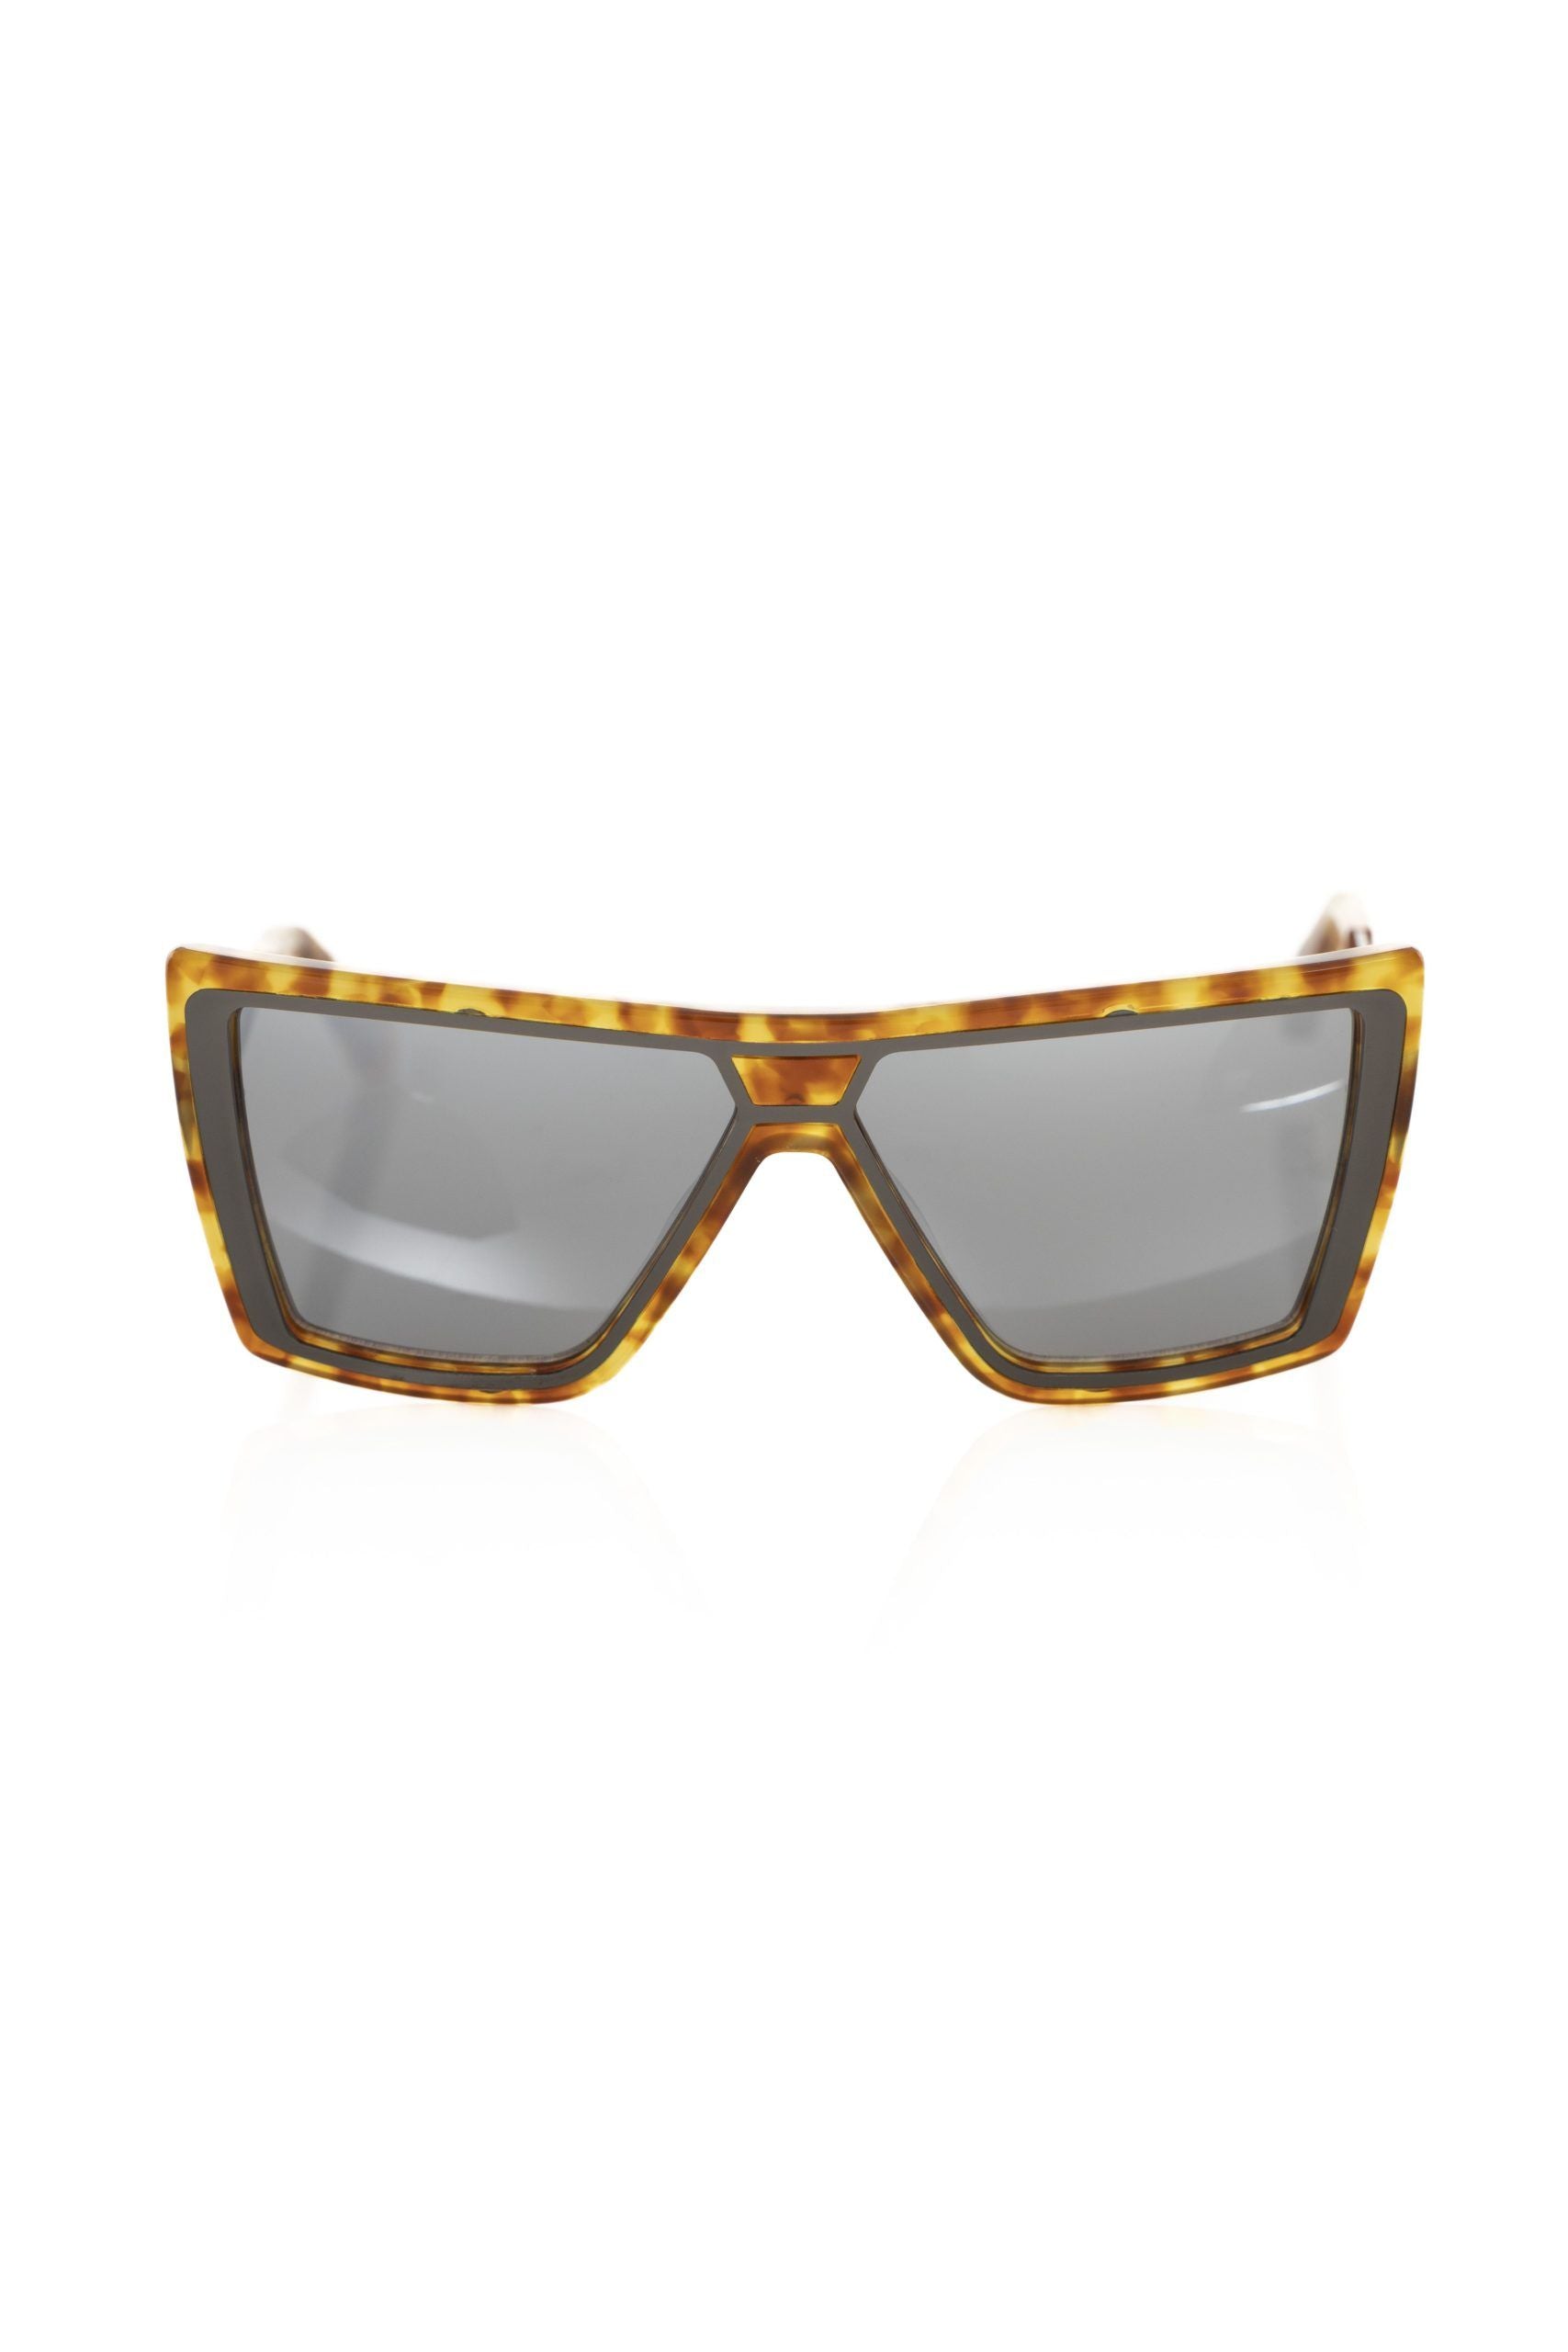 Chic Tortoise Shell Square Sunglasses